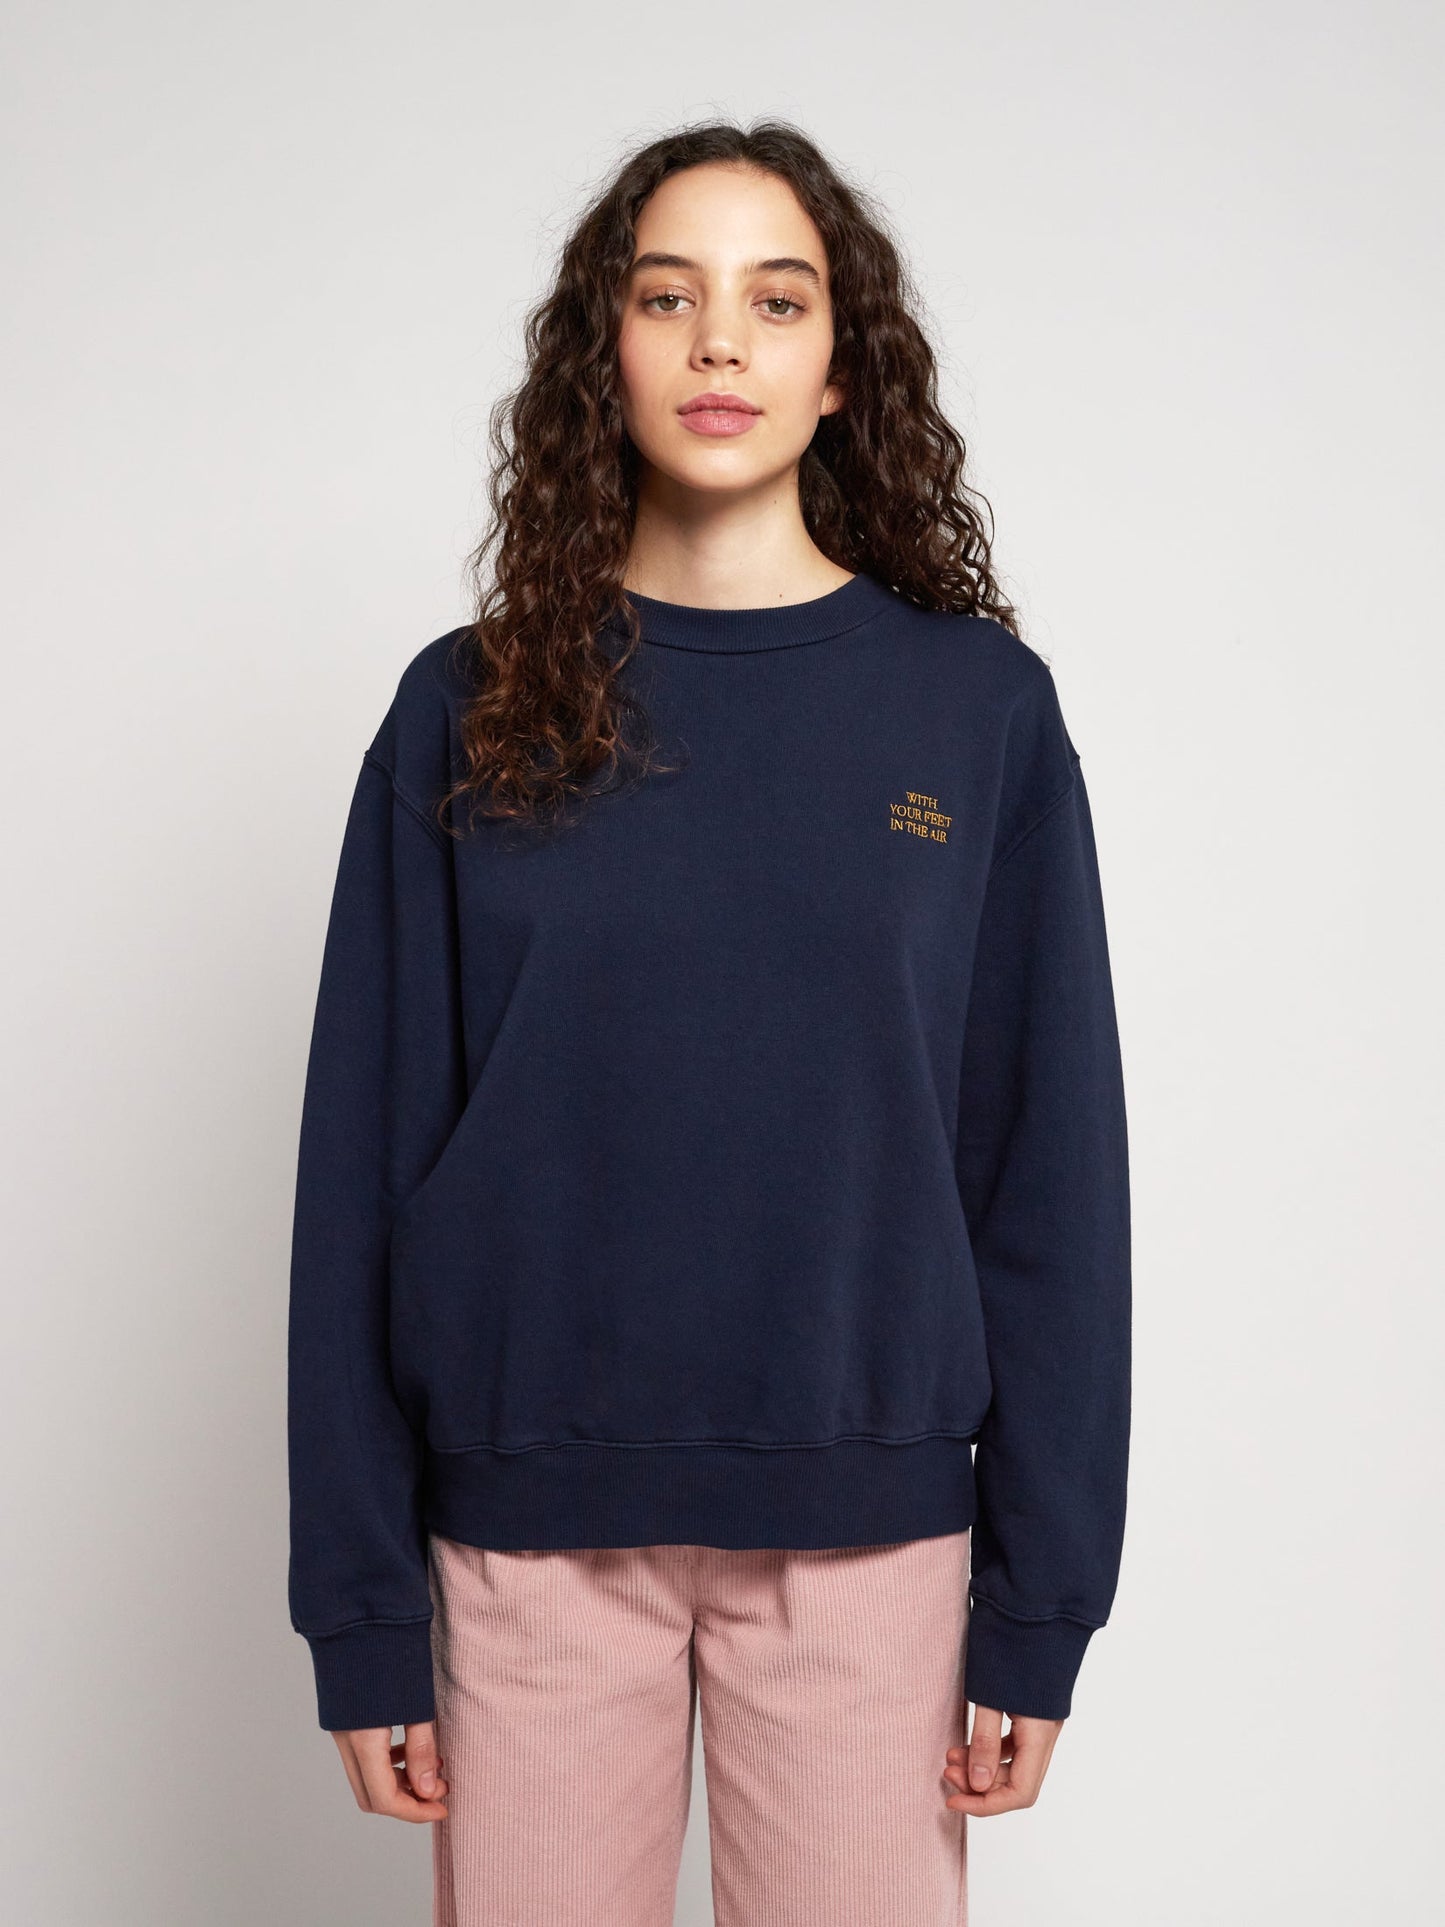 Embroidery unisex boxy sweatshirt